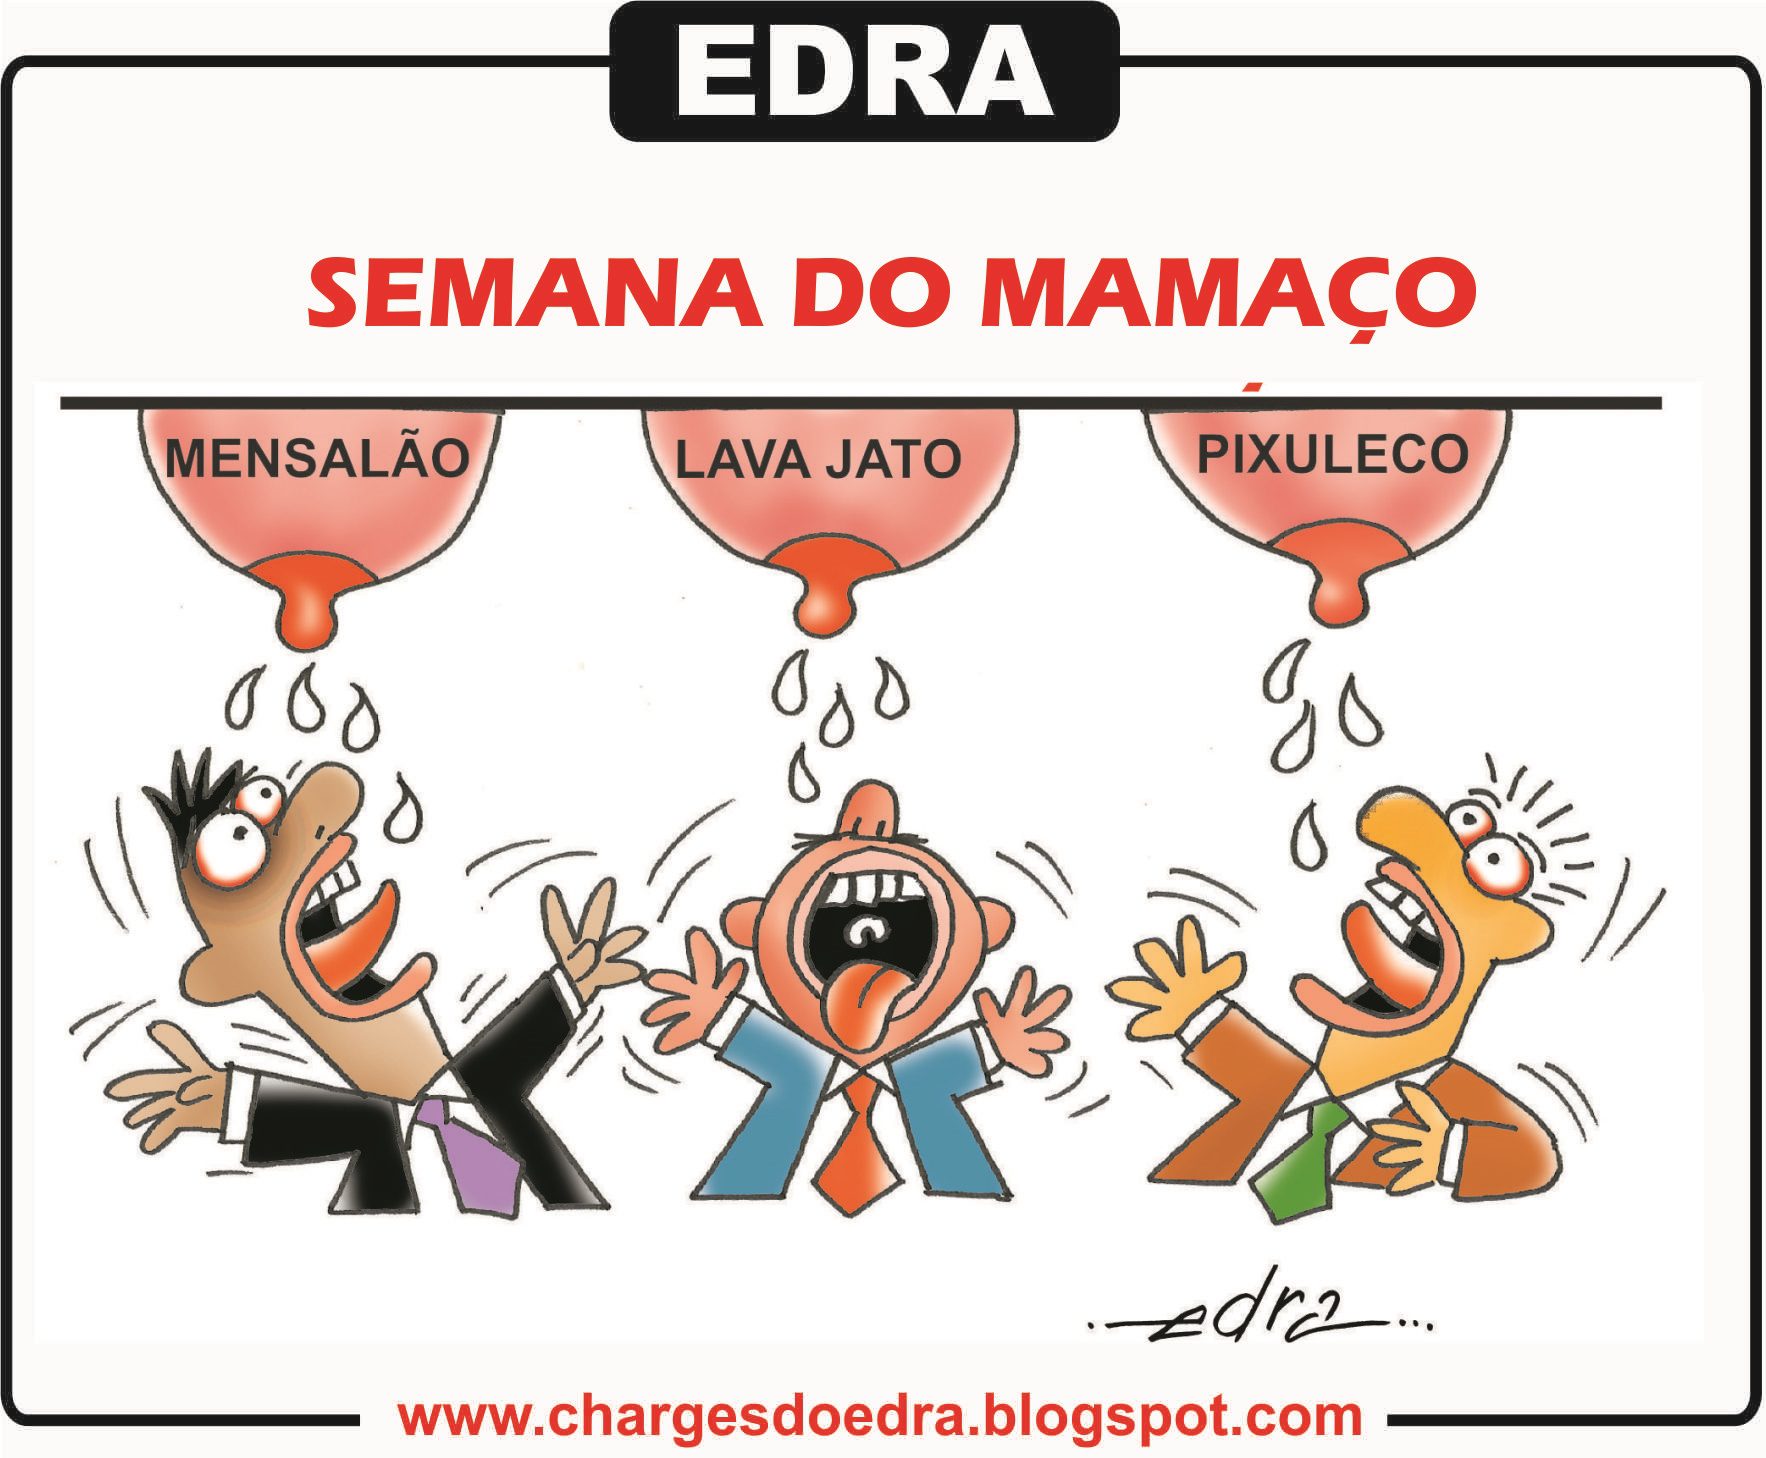 Charge do Edra 07-08-2015